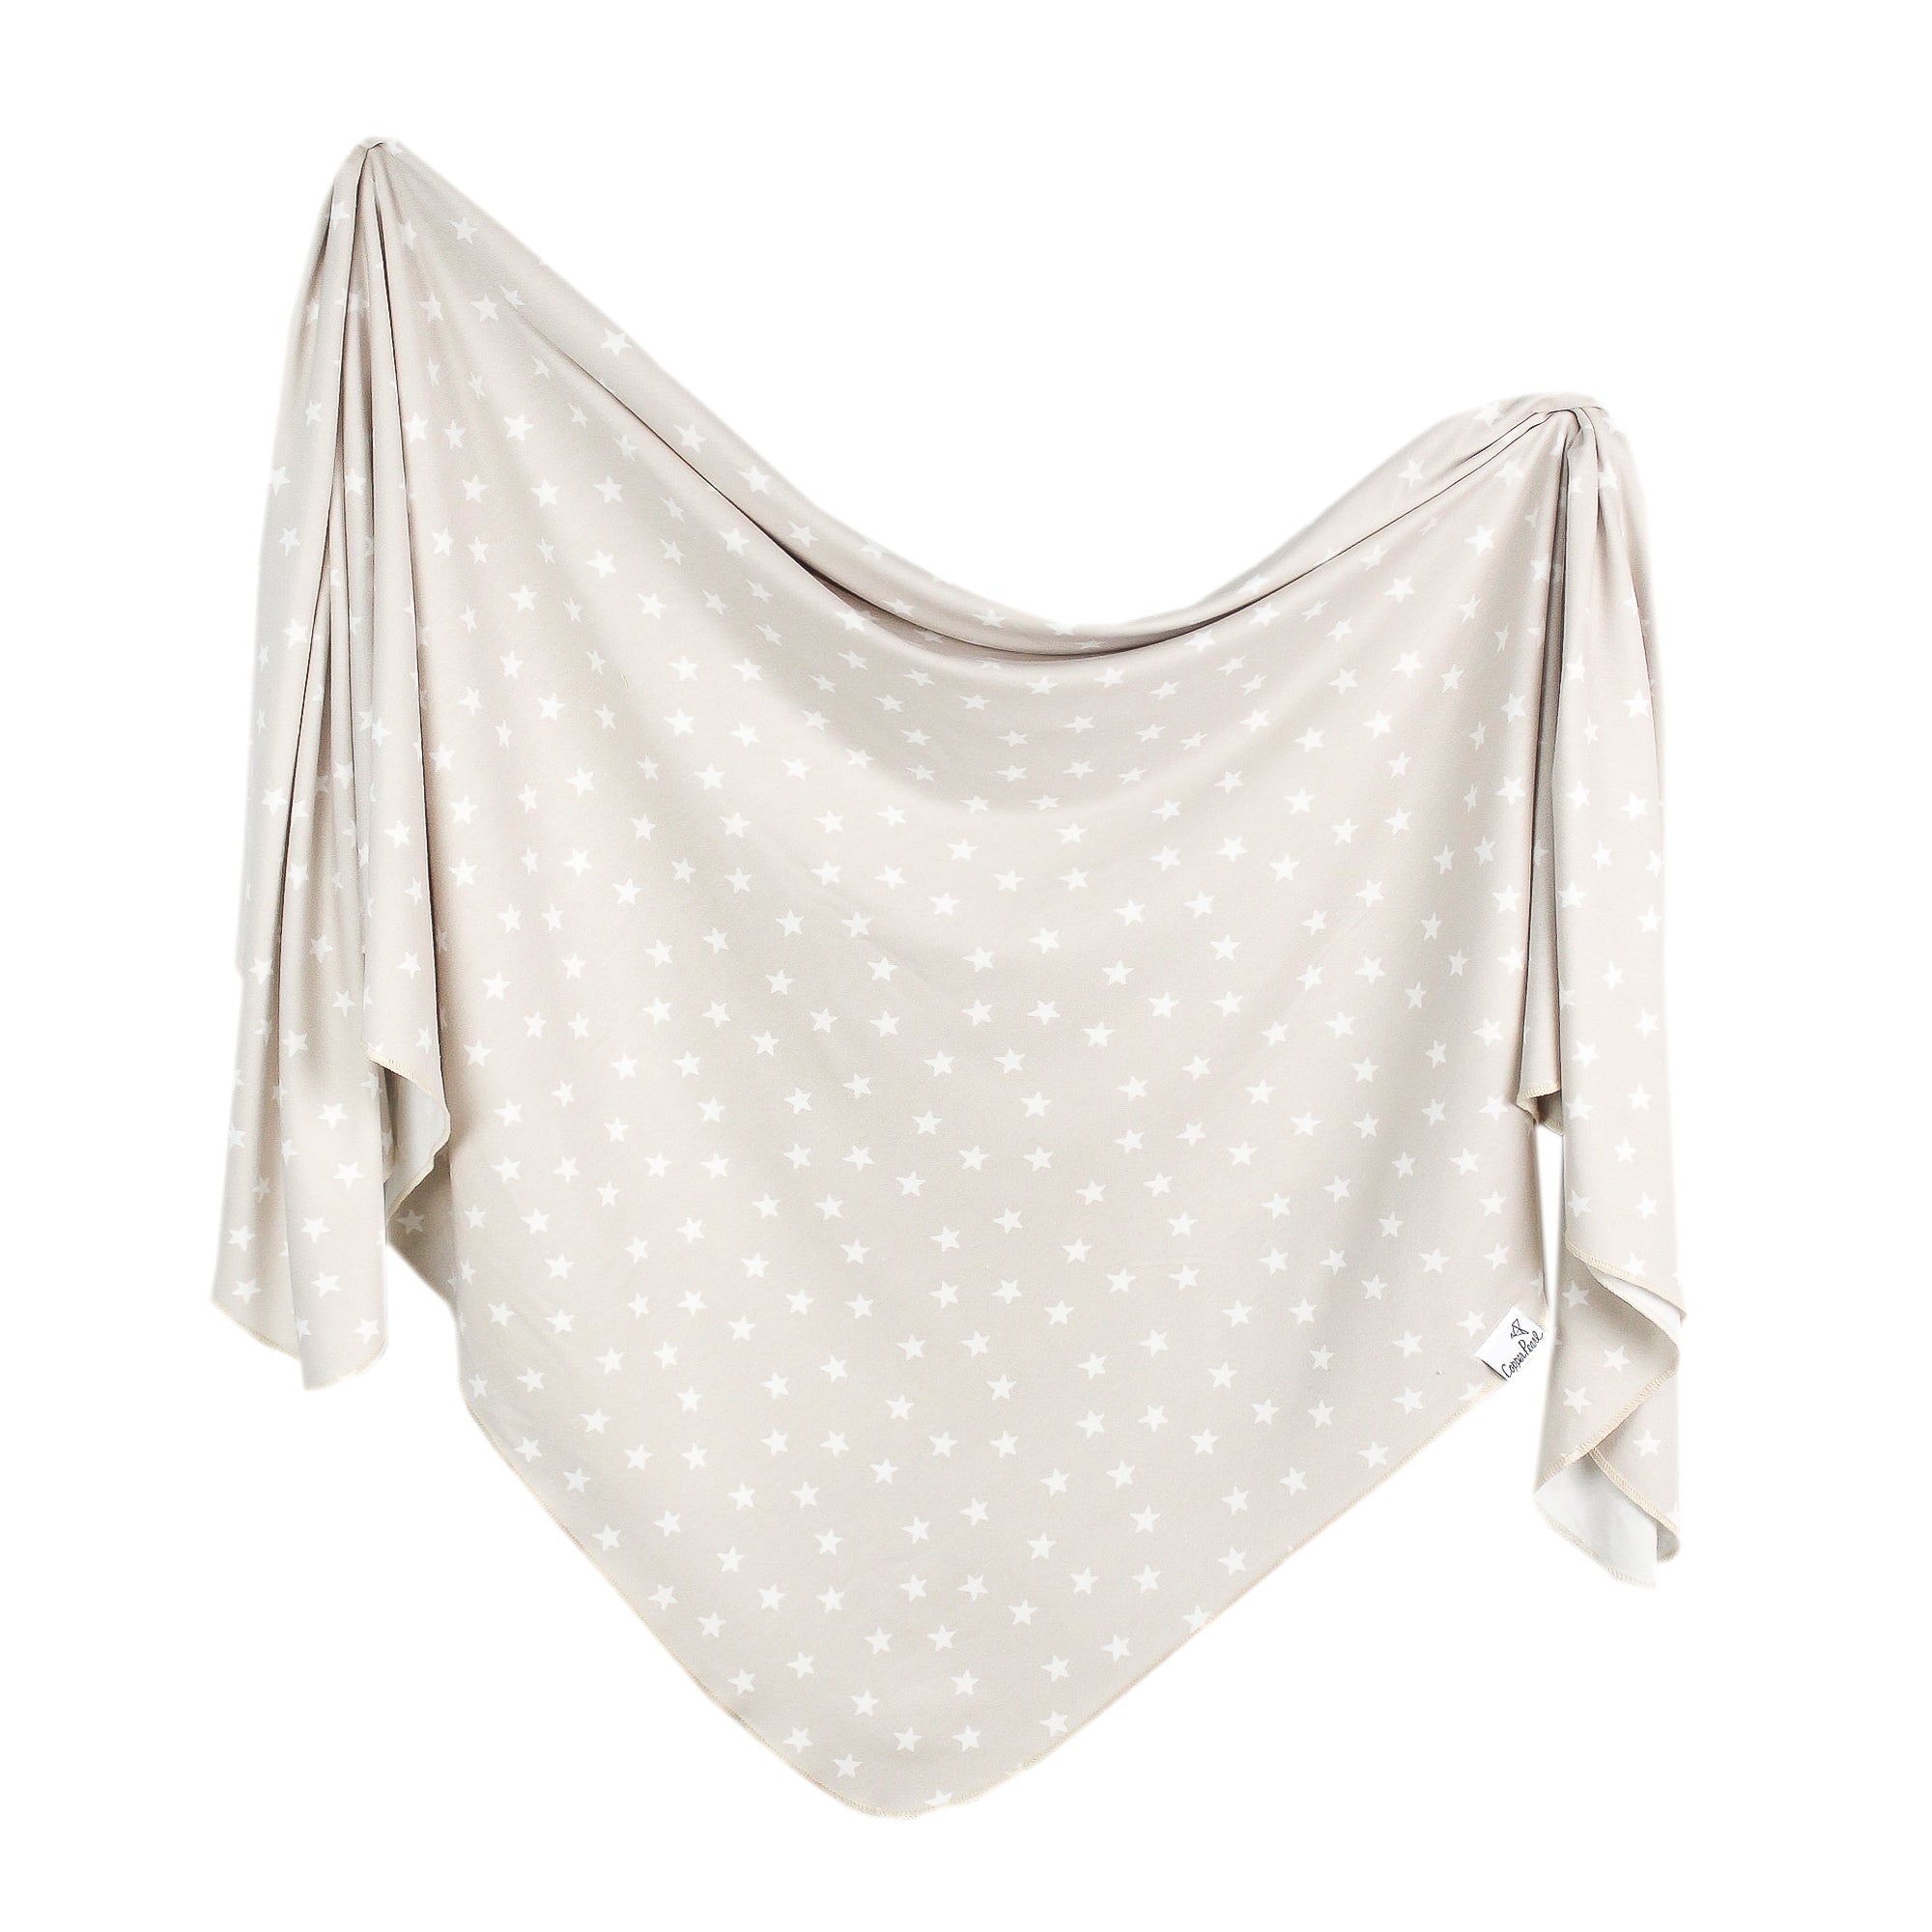 Knit Swaddle Blanket - Twinkle